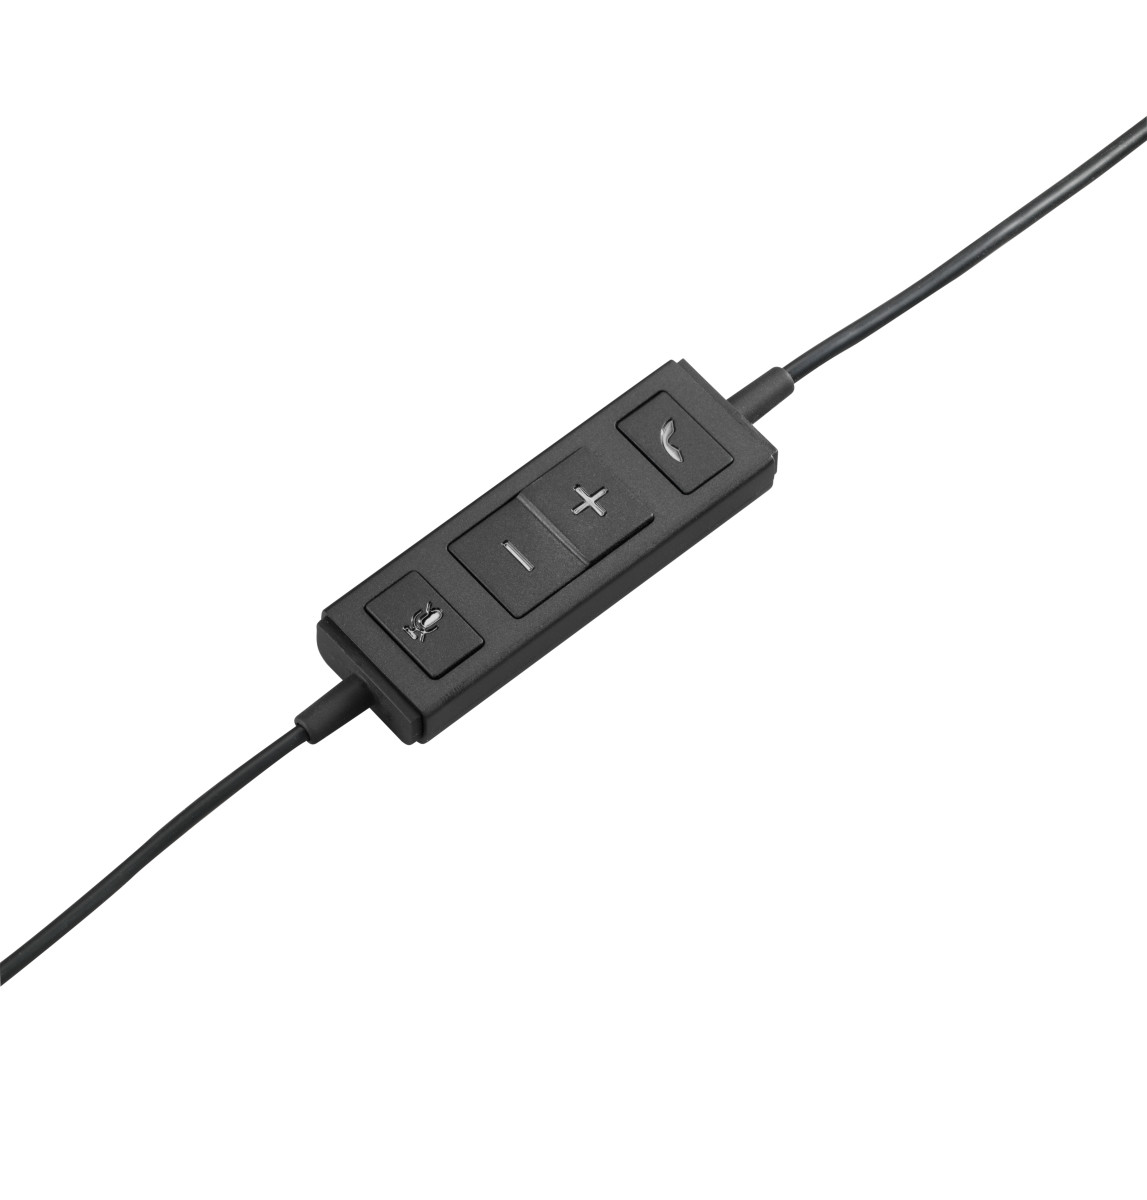 USB Headset H570e Mono - USB